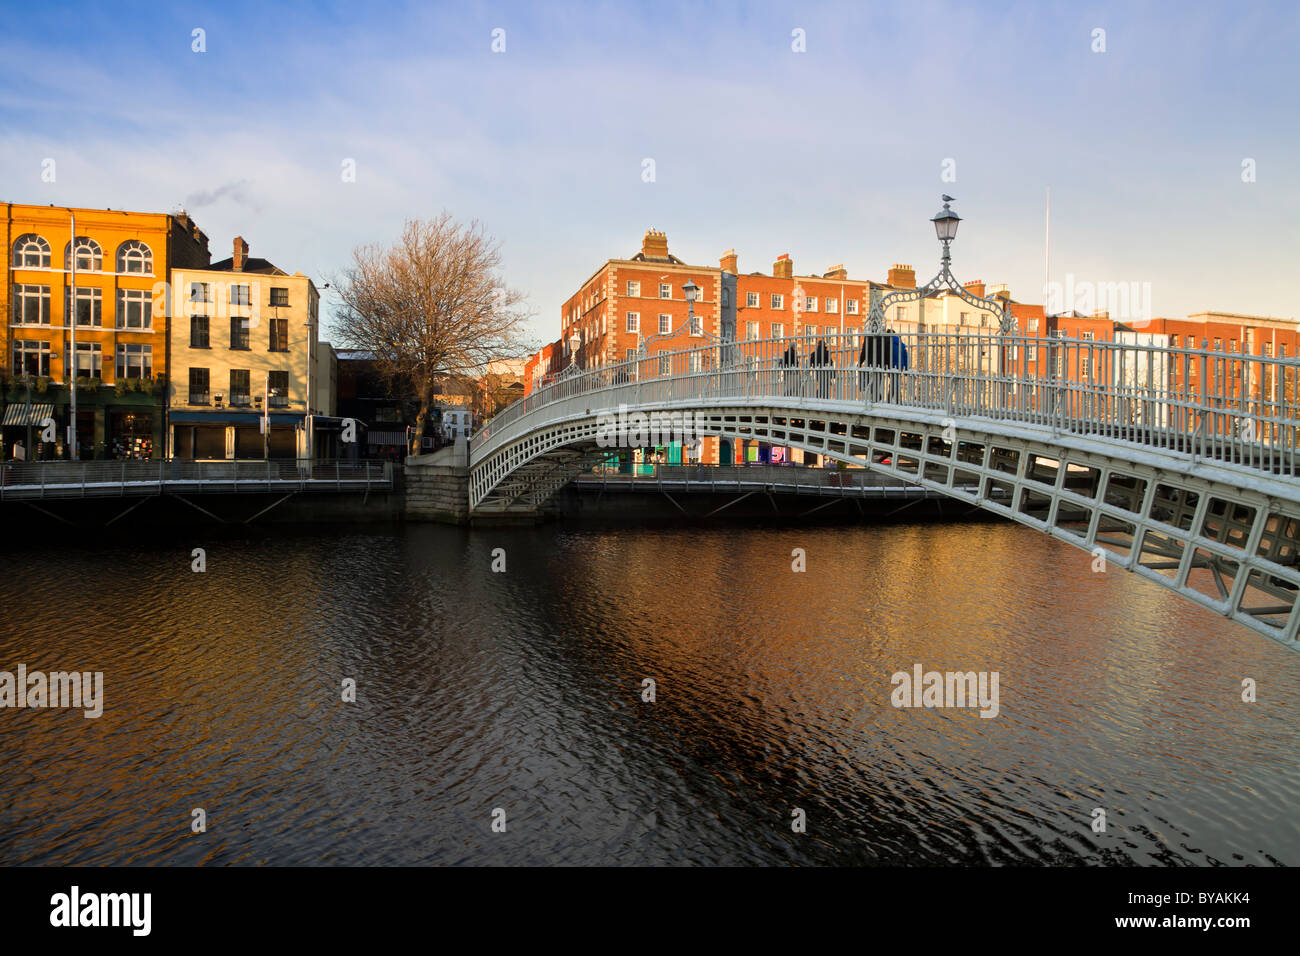 Dublín - landmark Ha'Penny Bridge sobre el río Liffey. Filas de casas coloridas. Foto de stock